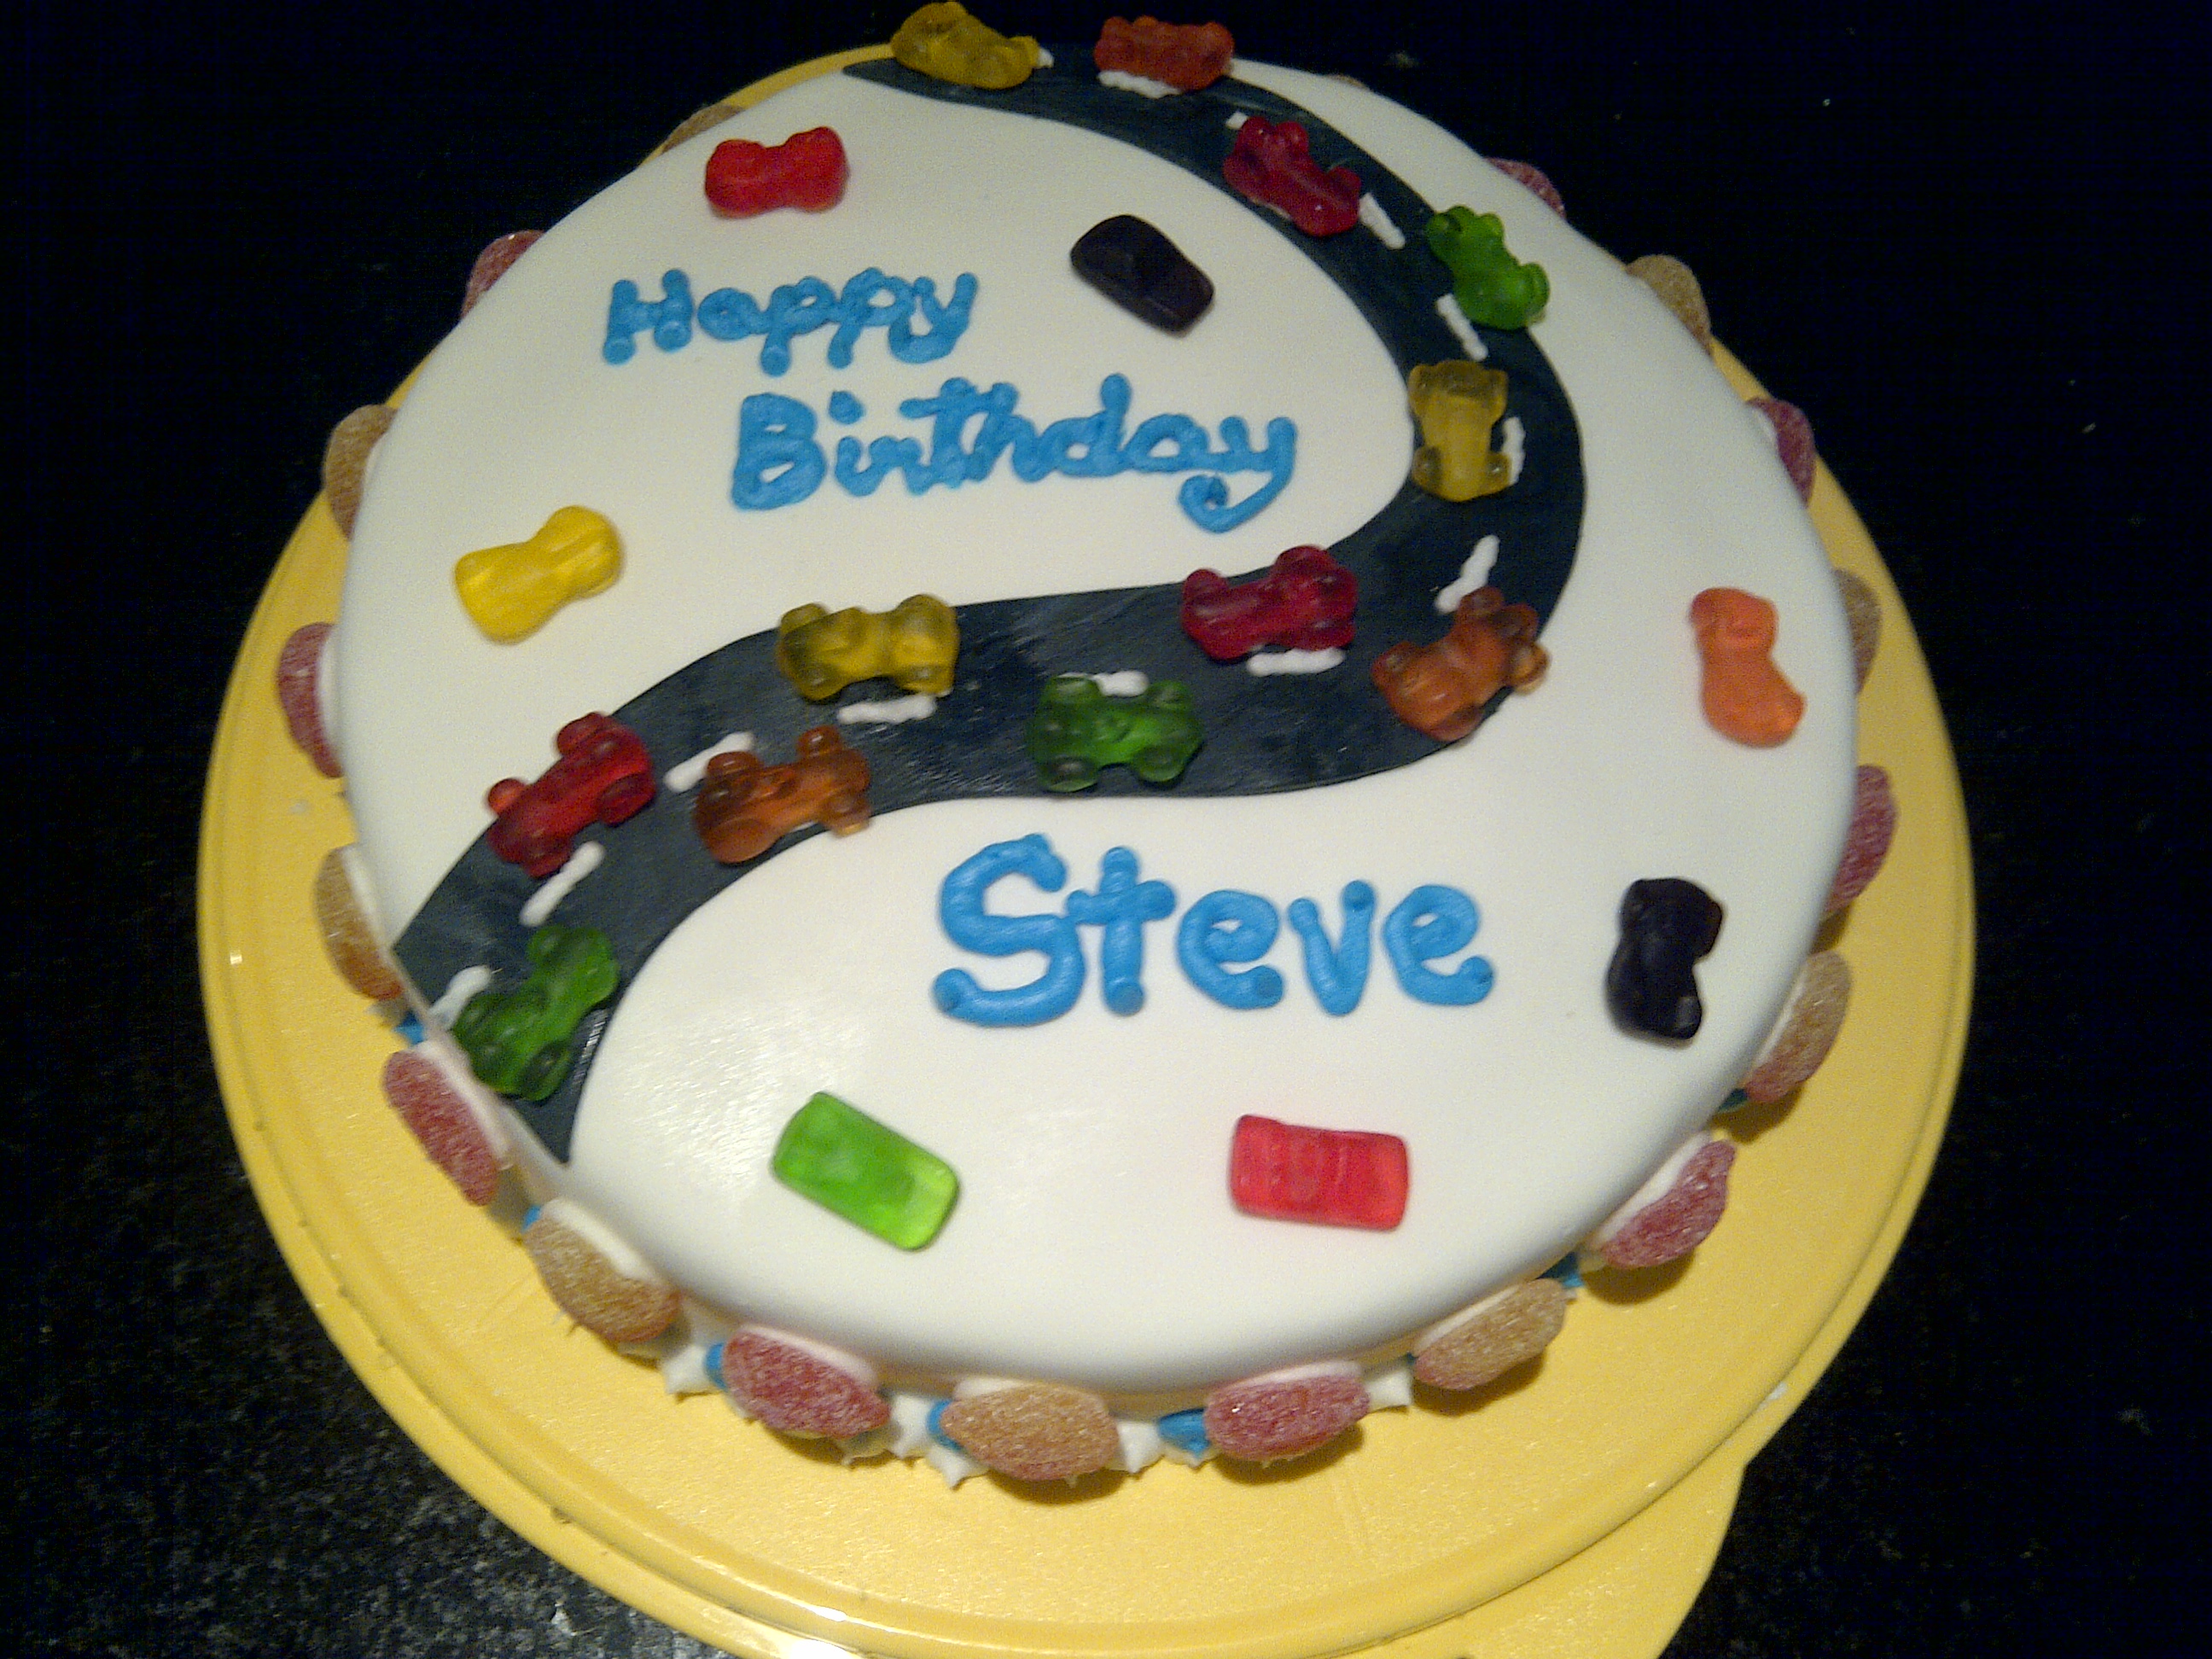 Happy Birthday Steve Cake.